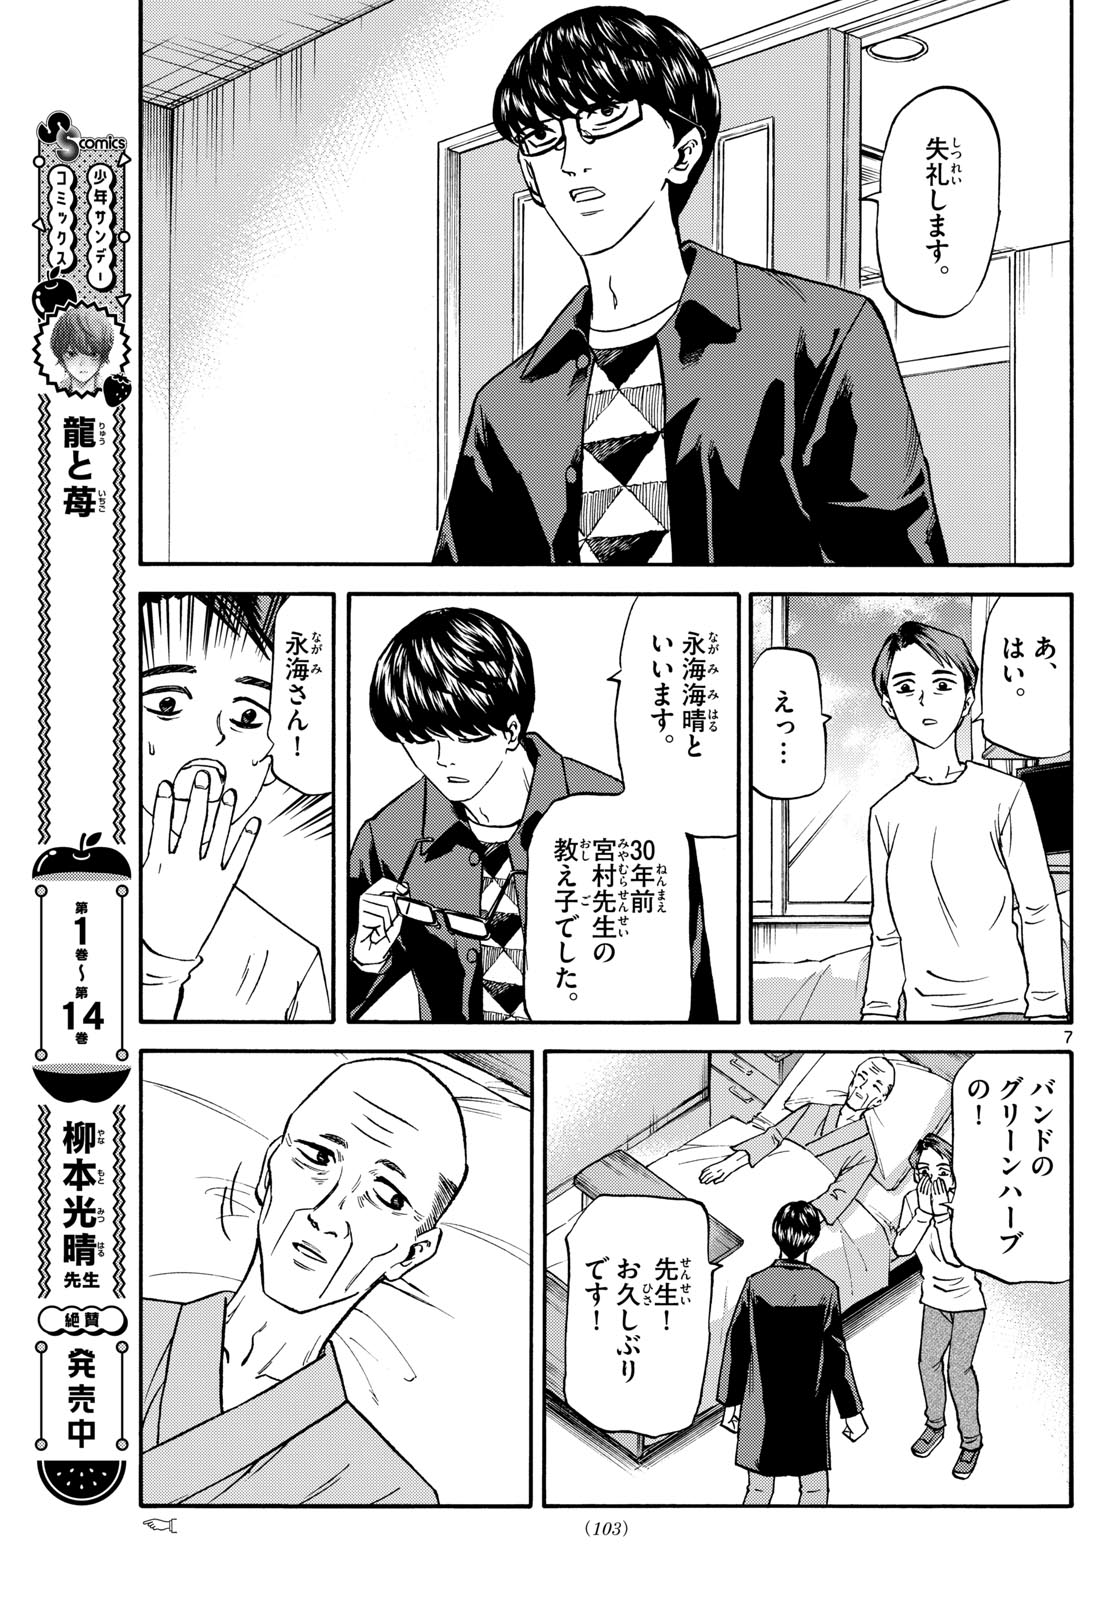 Tatsu to Ichigo - Chapter 174 - Page 7